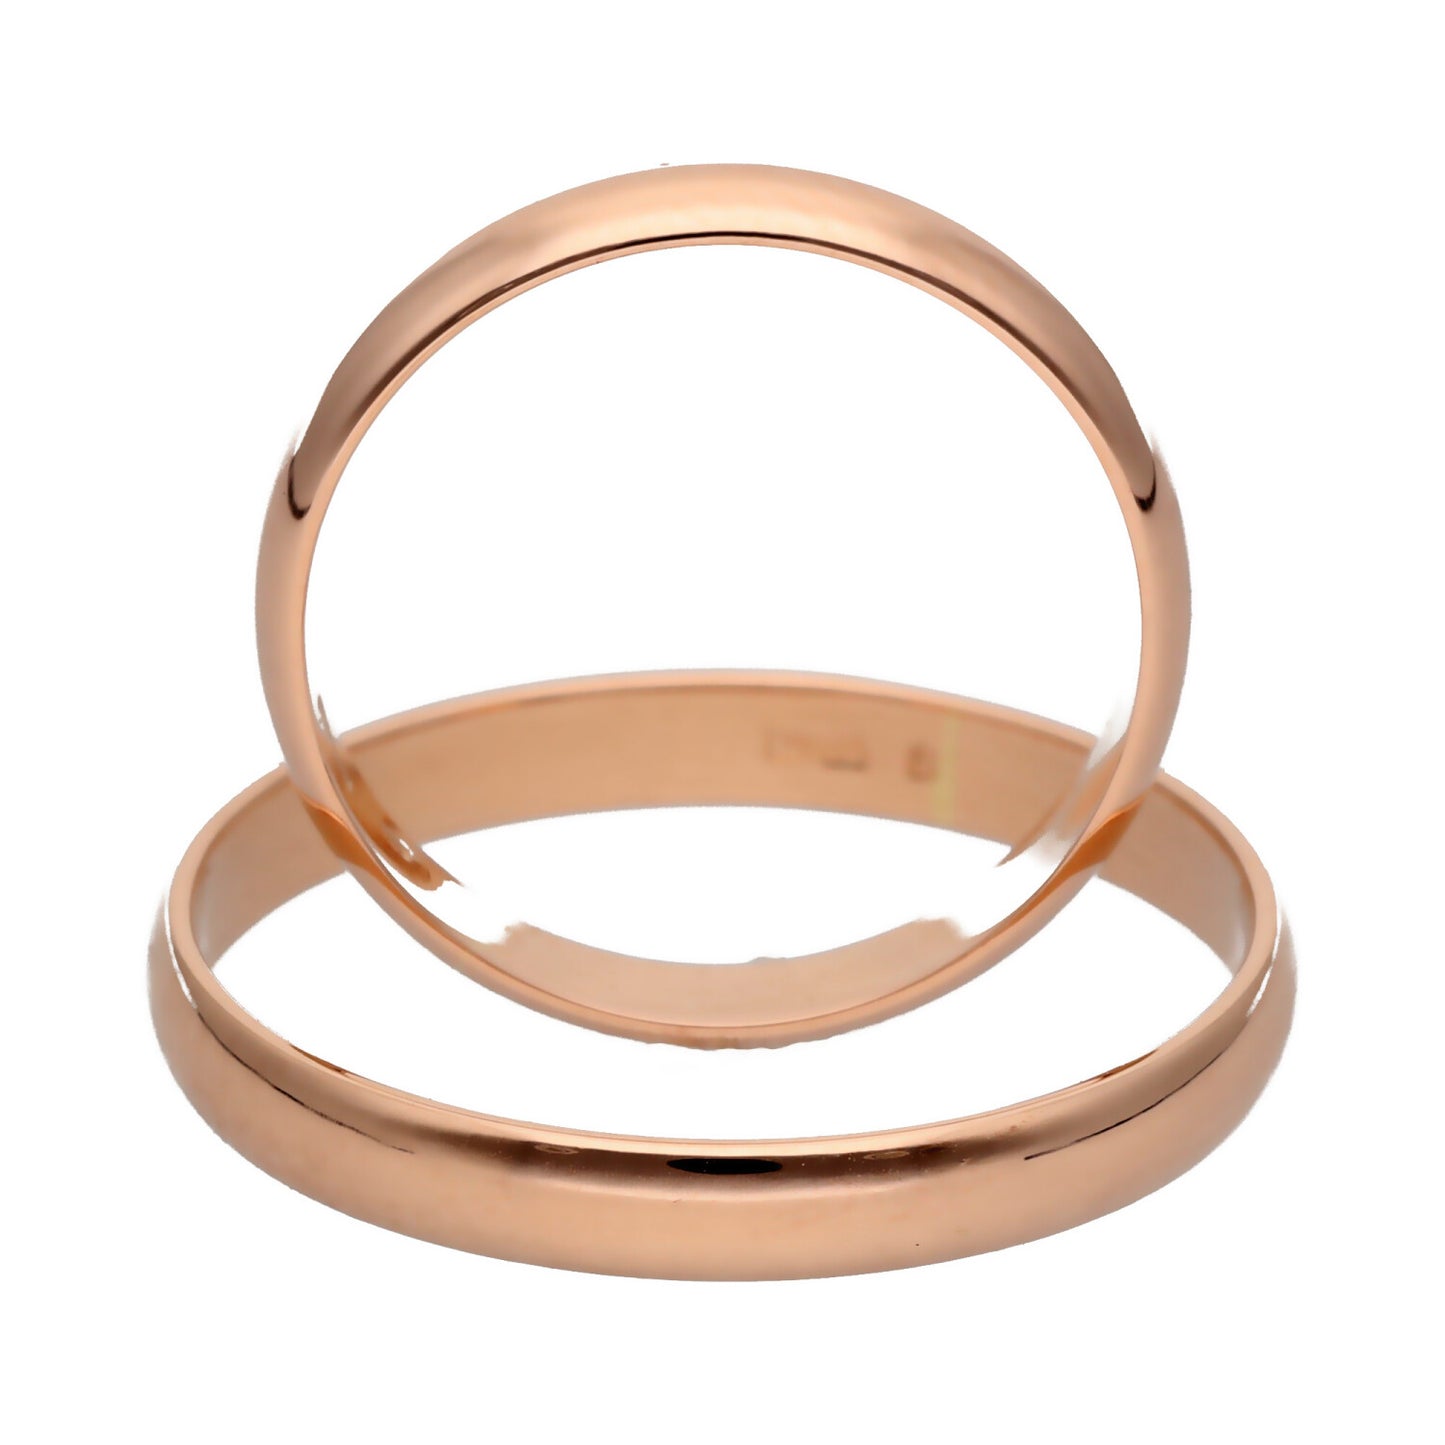 Klasikiniai vestuviniai žiedai 3mm pločio su komfortu vestuviniaiziedai.lt